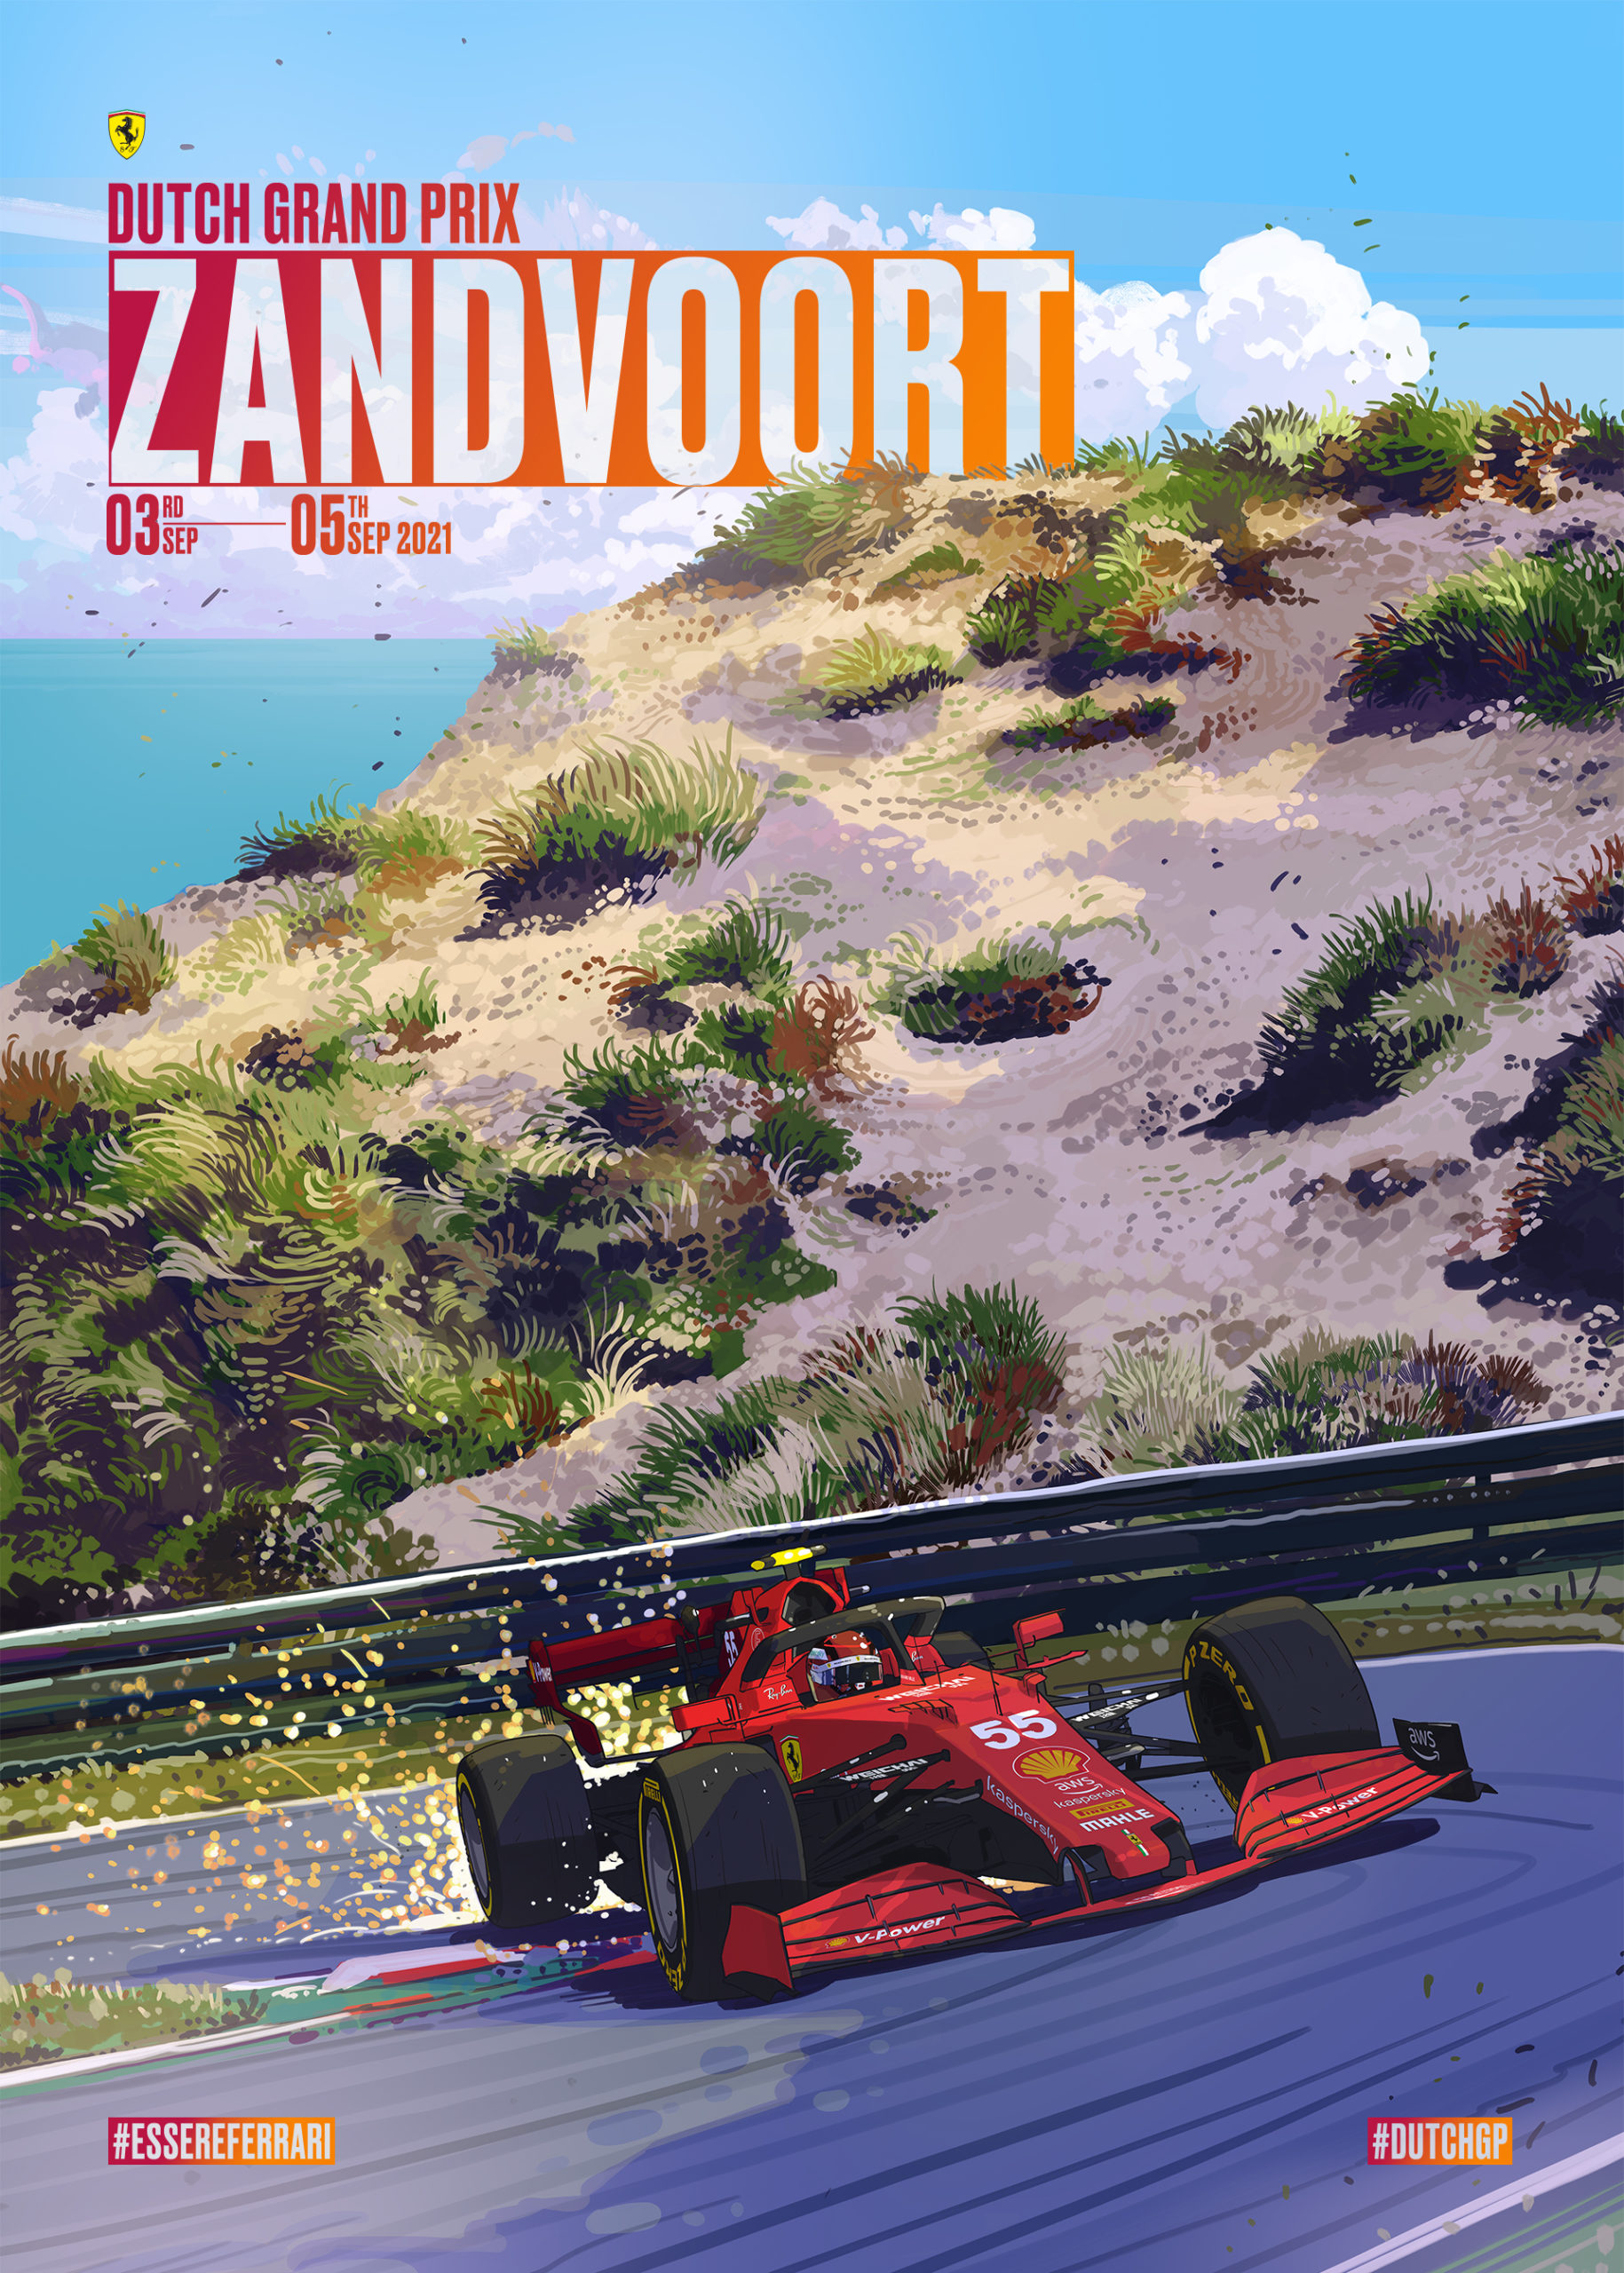 In beeld de posters van de F1teams voor Zandvoort Formule1.nl